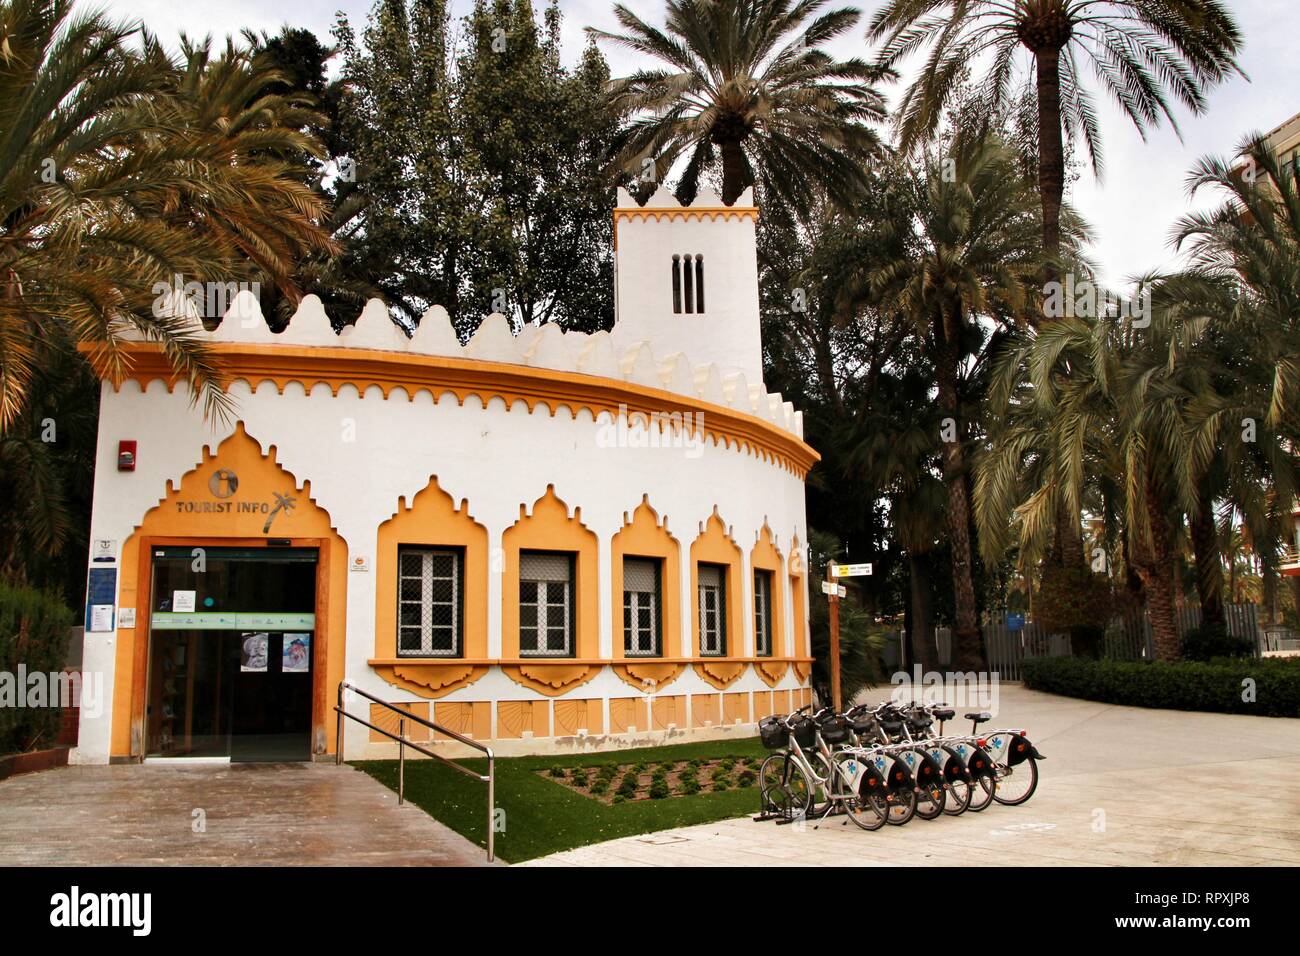 Elche, Alicante, Spanien - 19. Februar 2019: Fremdenverkehrsbüro von Palmen im Stadtpark von Elche umgeben, Provinz Alicante, Spanien Stockfoto